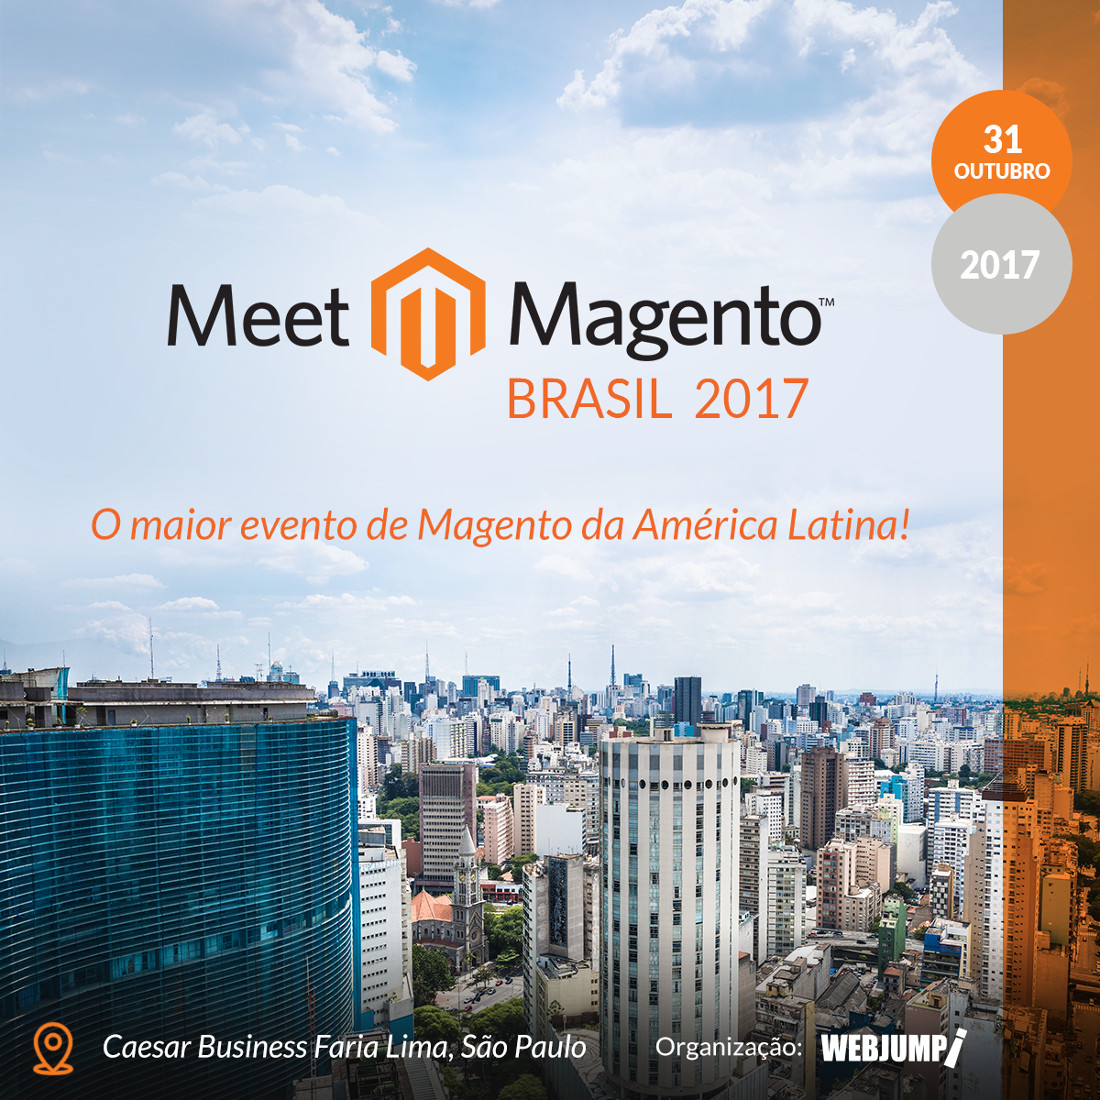 Meet Magento Brazil 2017